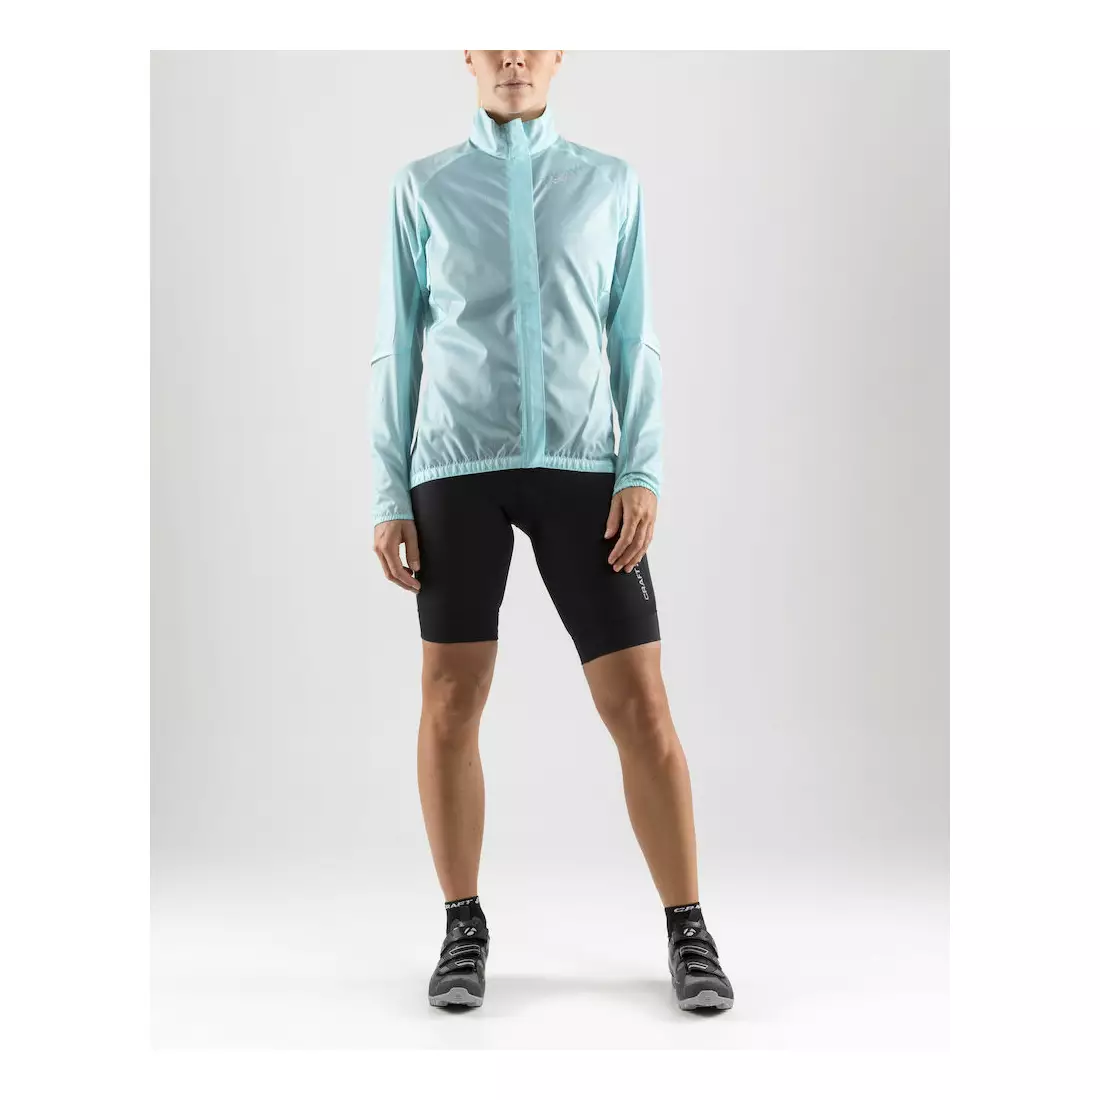 CRAFT Mist Wind JKT women's cycling jacket, windbreaker 1906073-619610